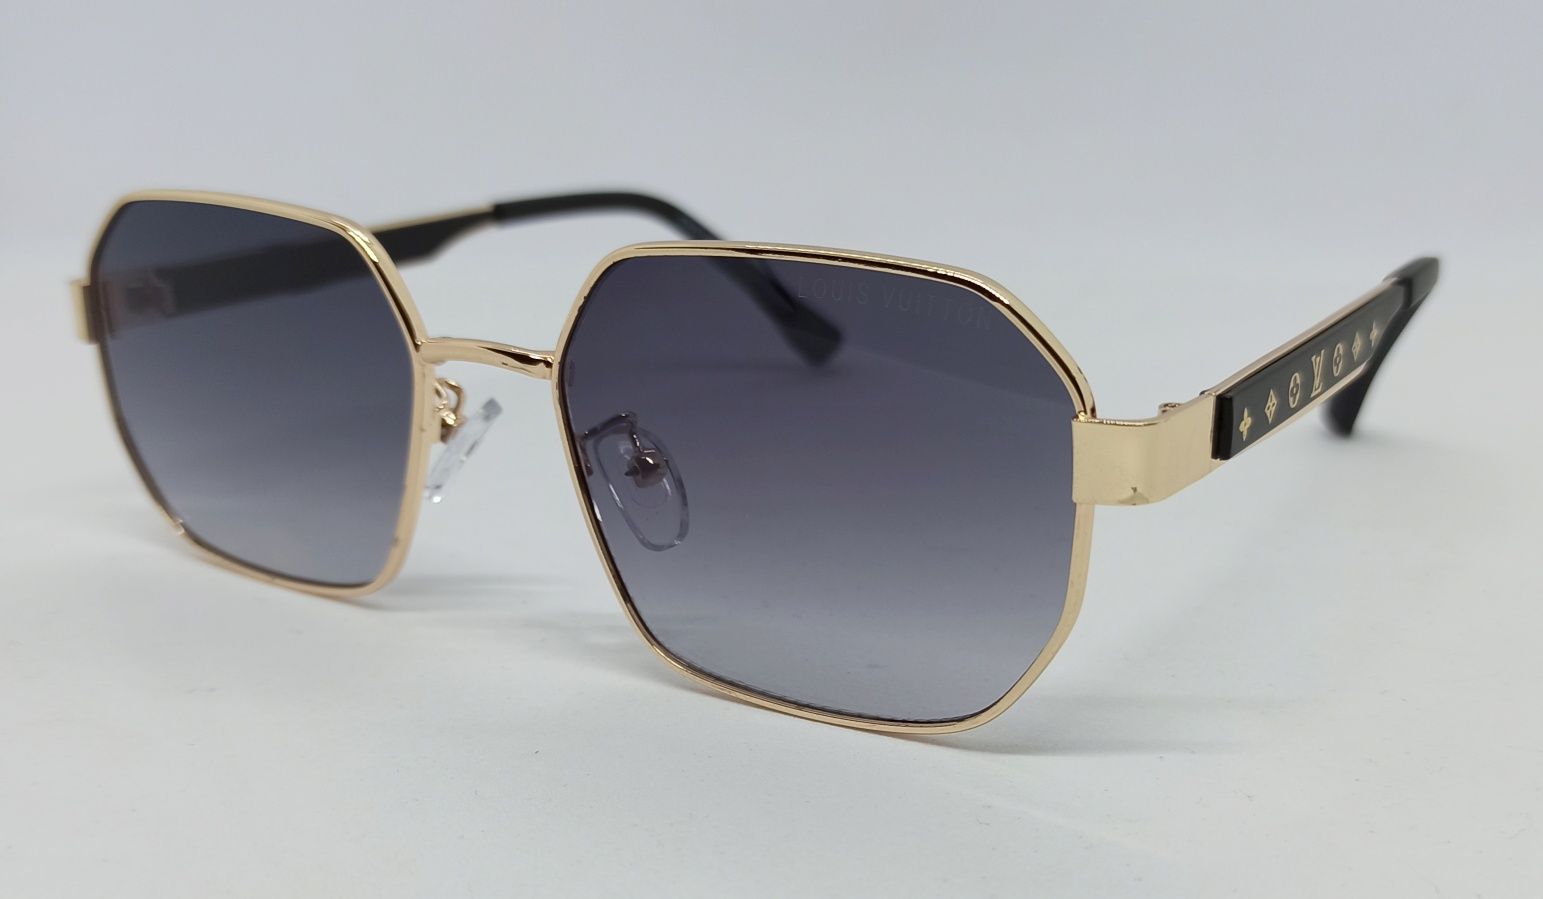 Louis Vuitton очки унисекс стильные серый градиент в золот метал оправ